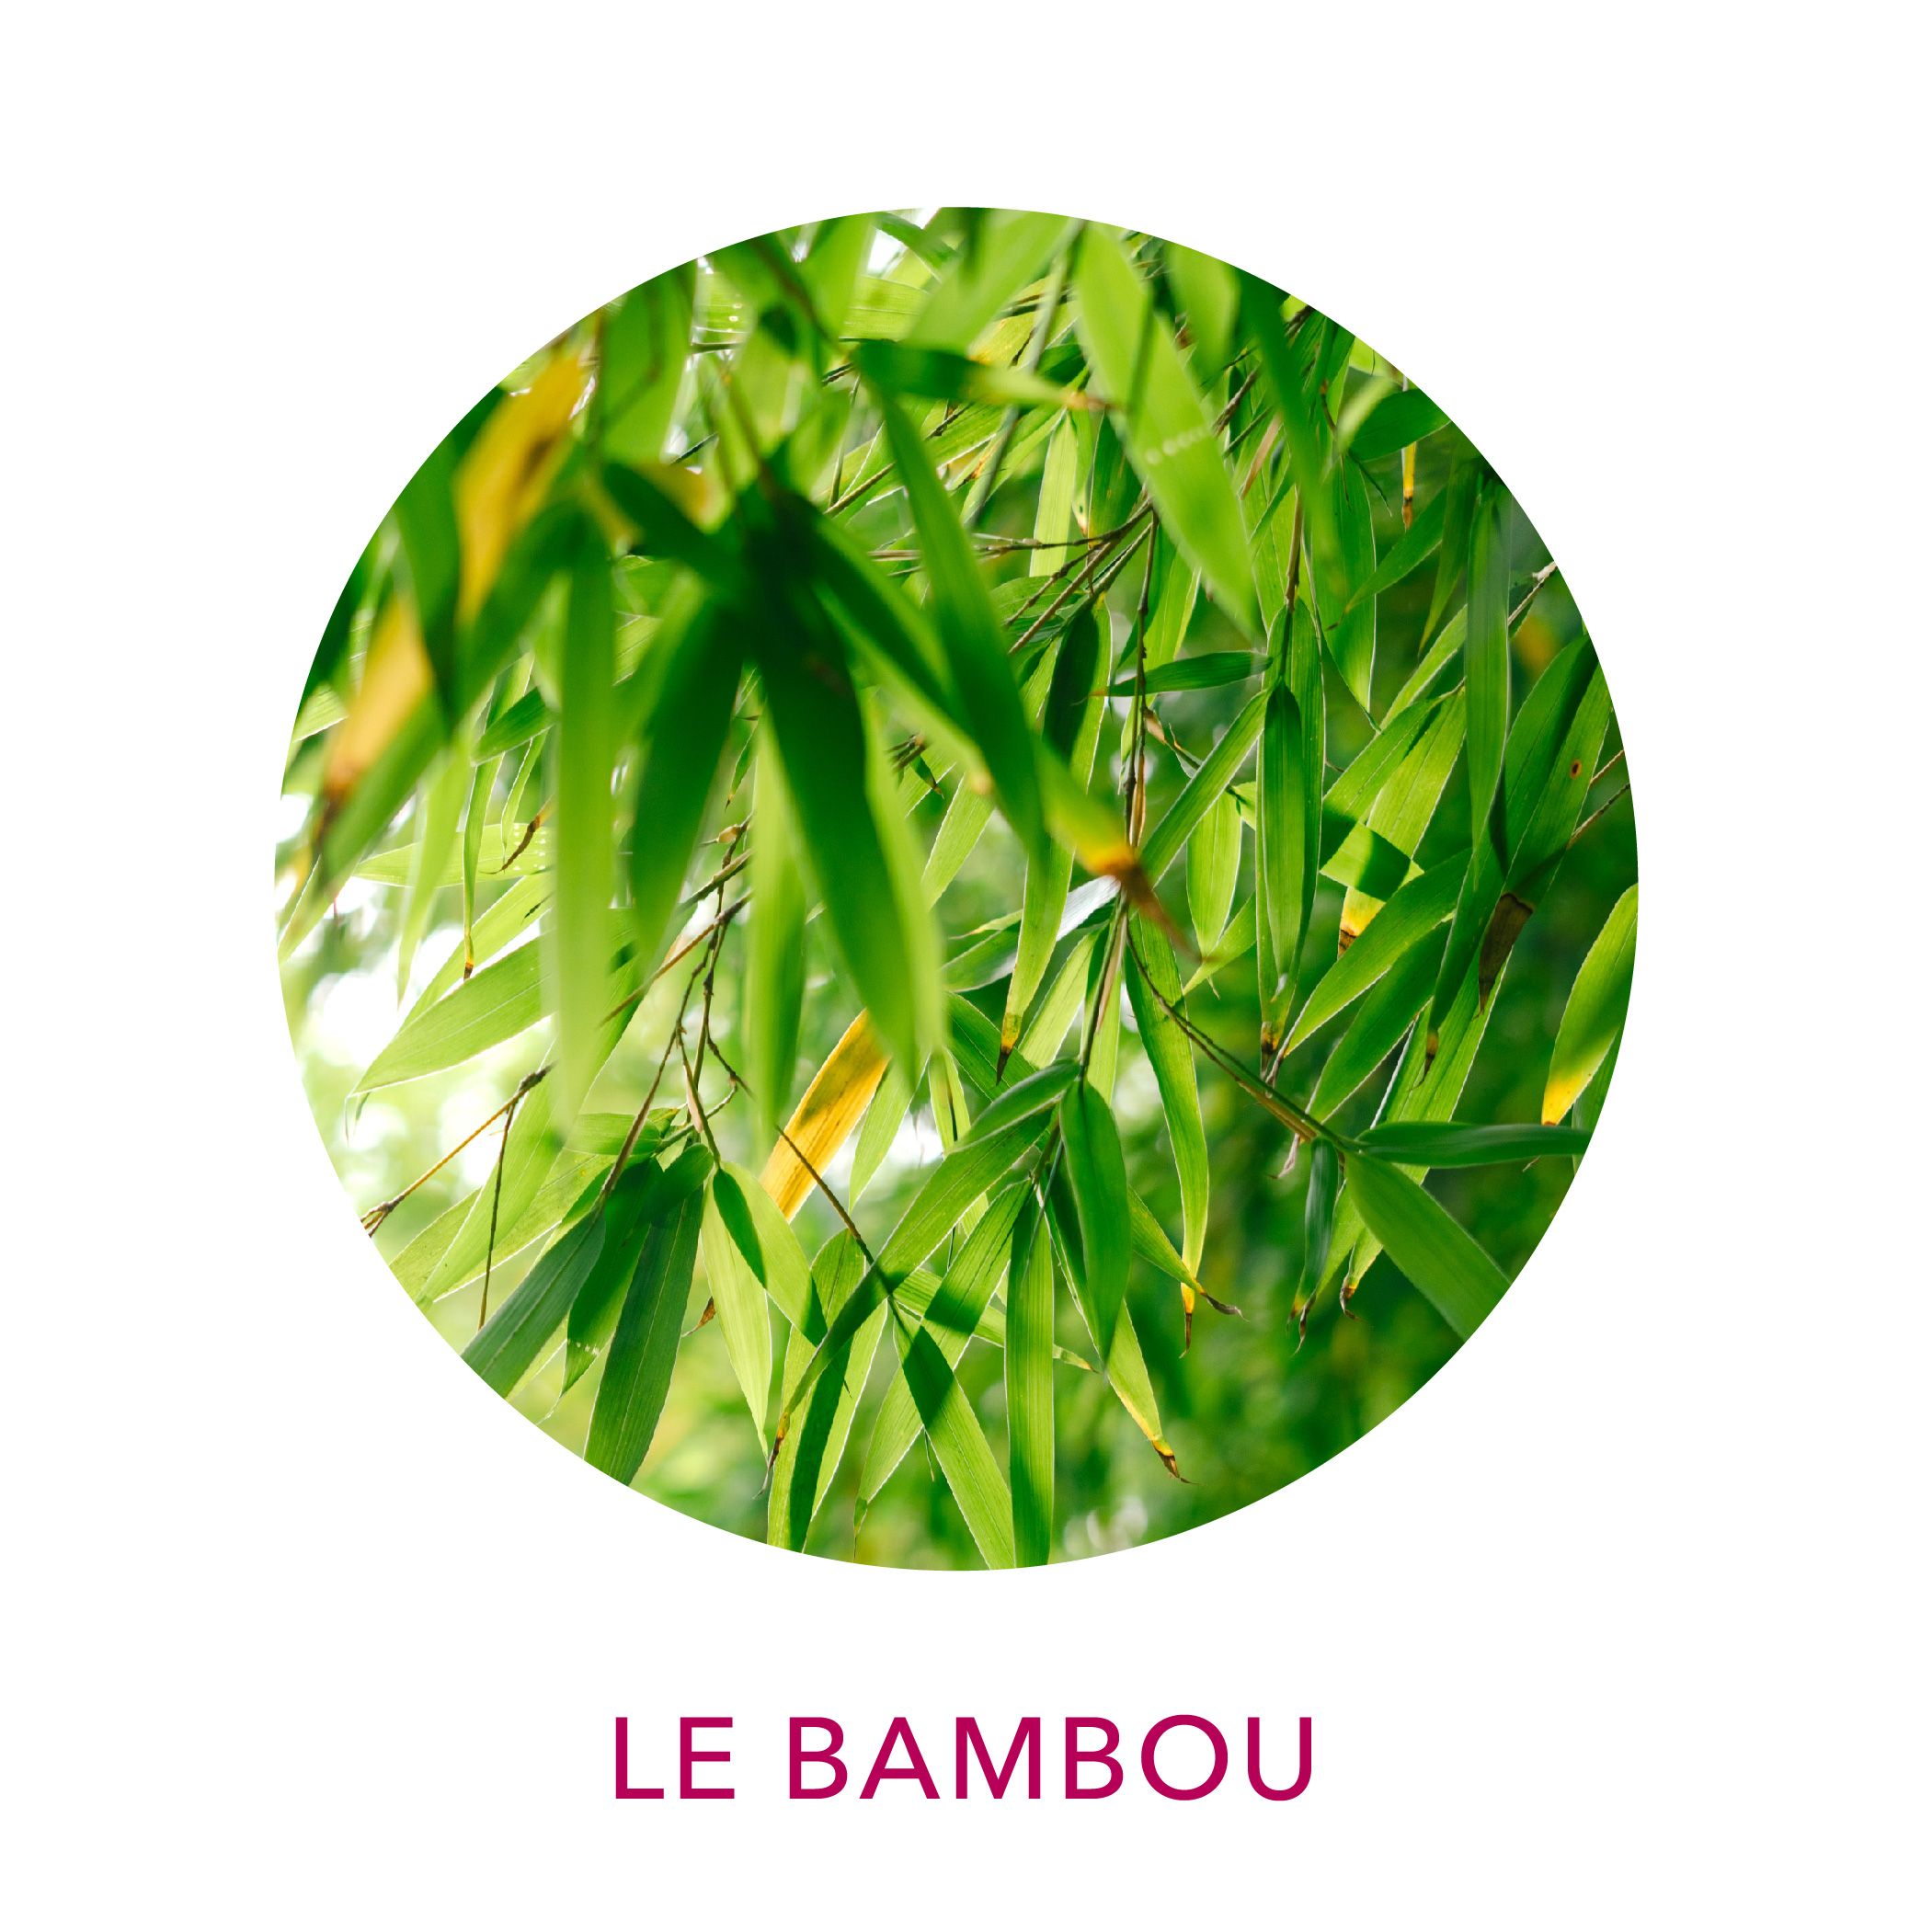 Extrait de bambou